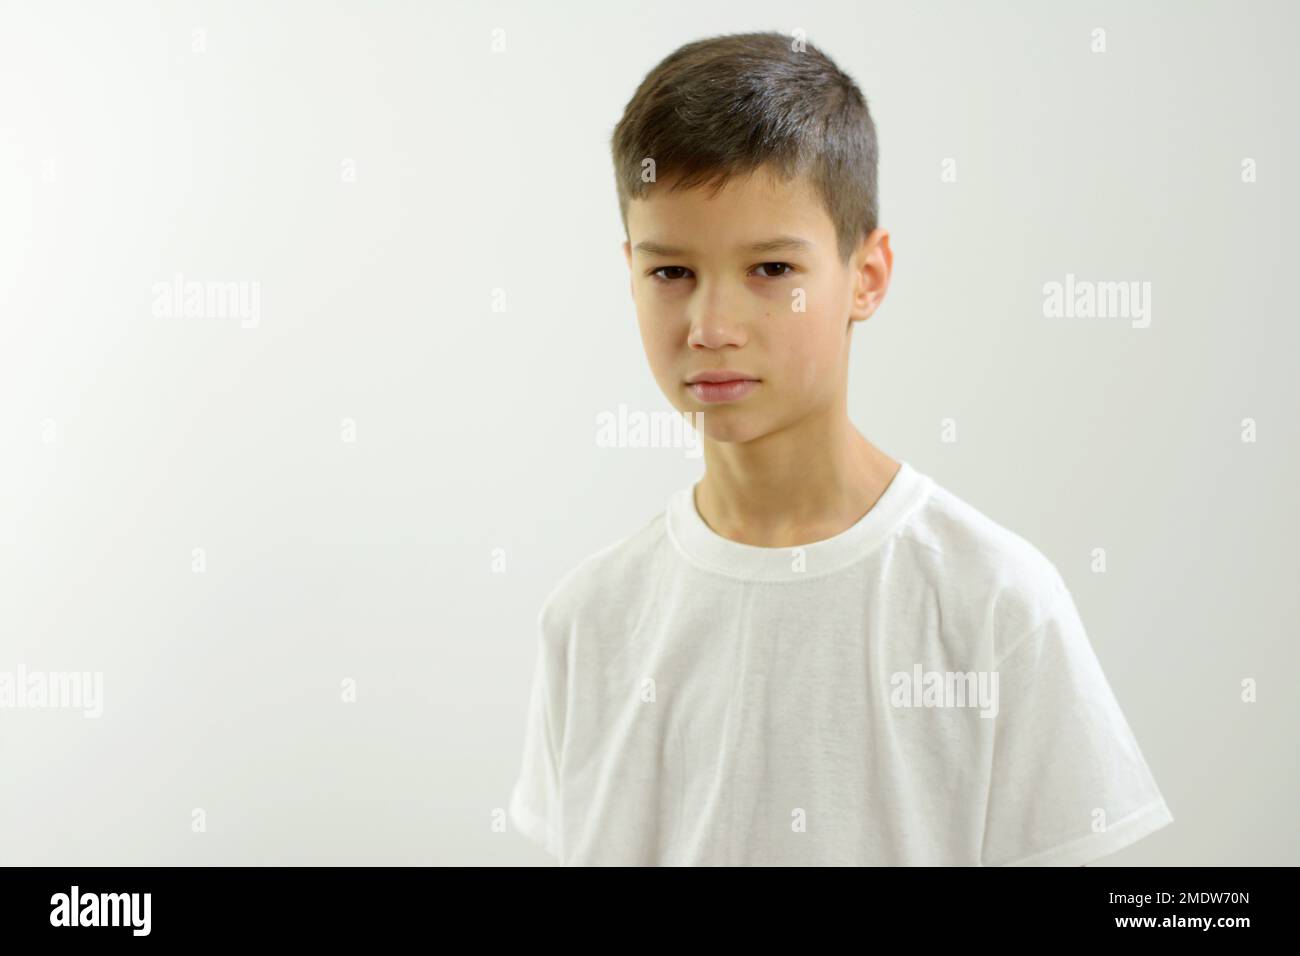 Ein 8-10-jähriger Junge sieht in den Rahmen, da ist Platz für Text auf weißem Hintergrund. Er ist ein wenig traurig. Er hat schmale orientalische Augen. Schöne Lippen, ordentlich frisiert dunkles Haar, weißes T-Shirt, ein wenig tadelnswert Stockfoto